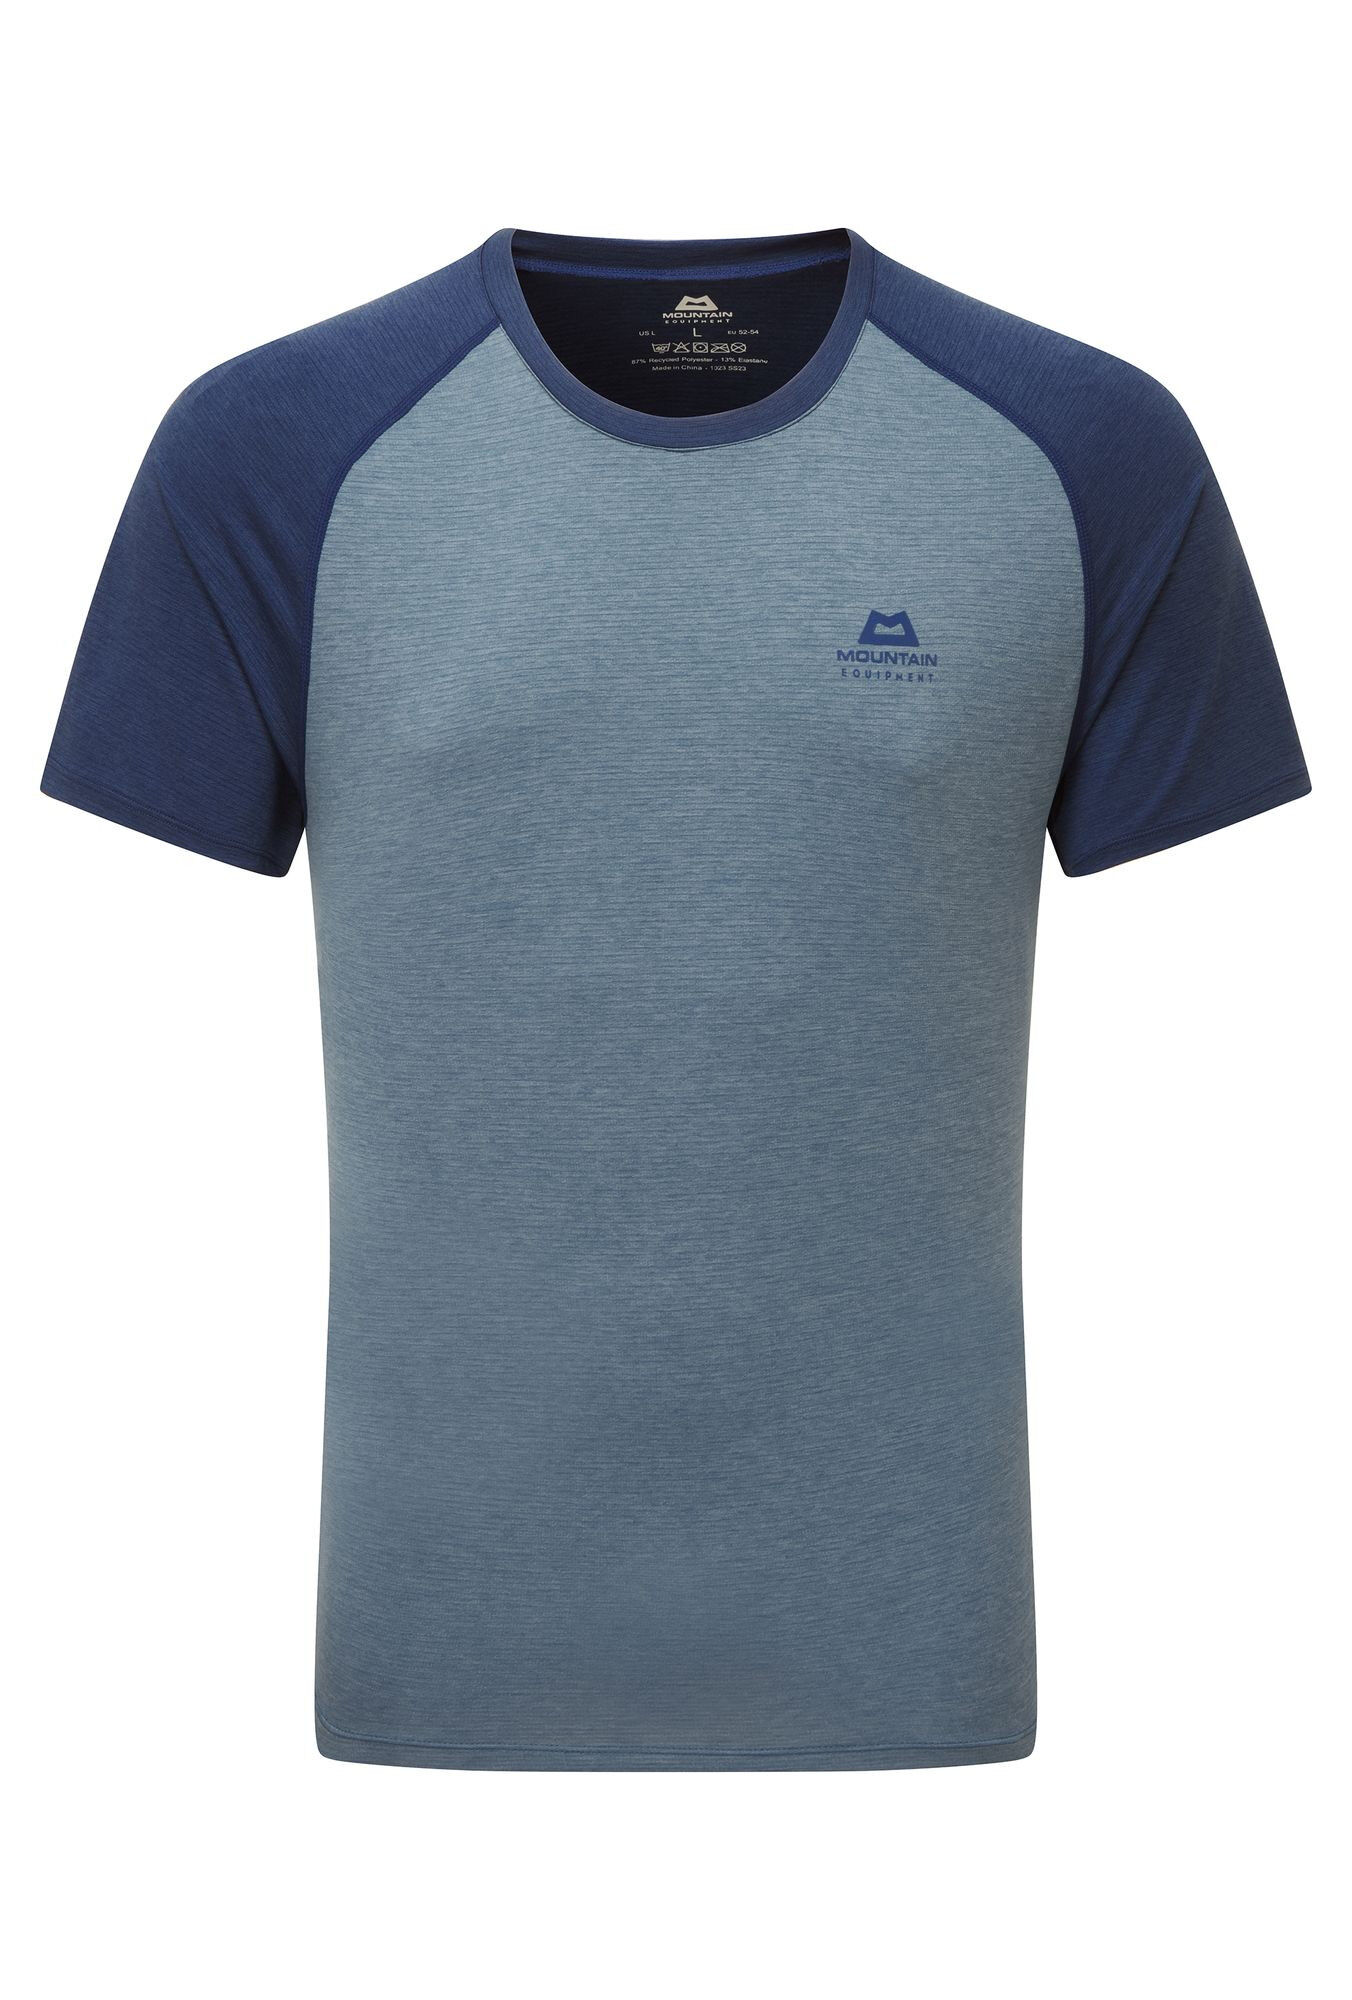 Mountain Equipment Nava Crew - T-shirt - Men's | Hardloop